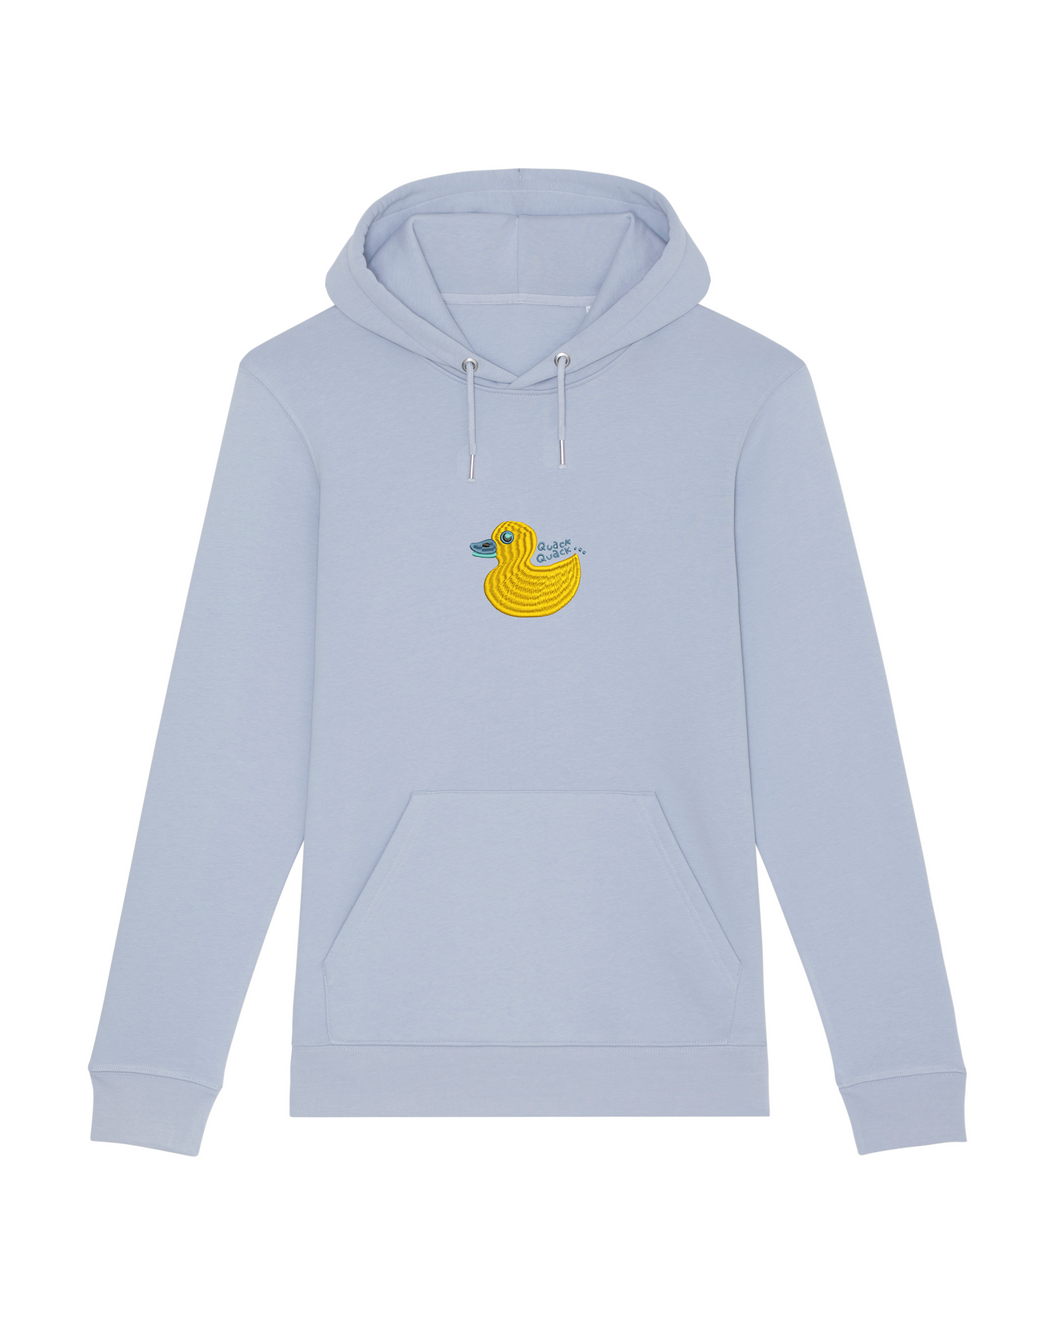 Quack, Quack 🦆 - Embroidered UNISEX hoodie